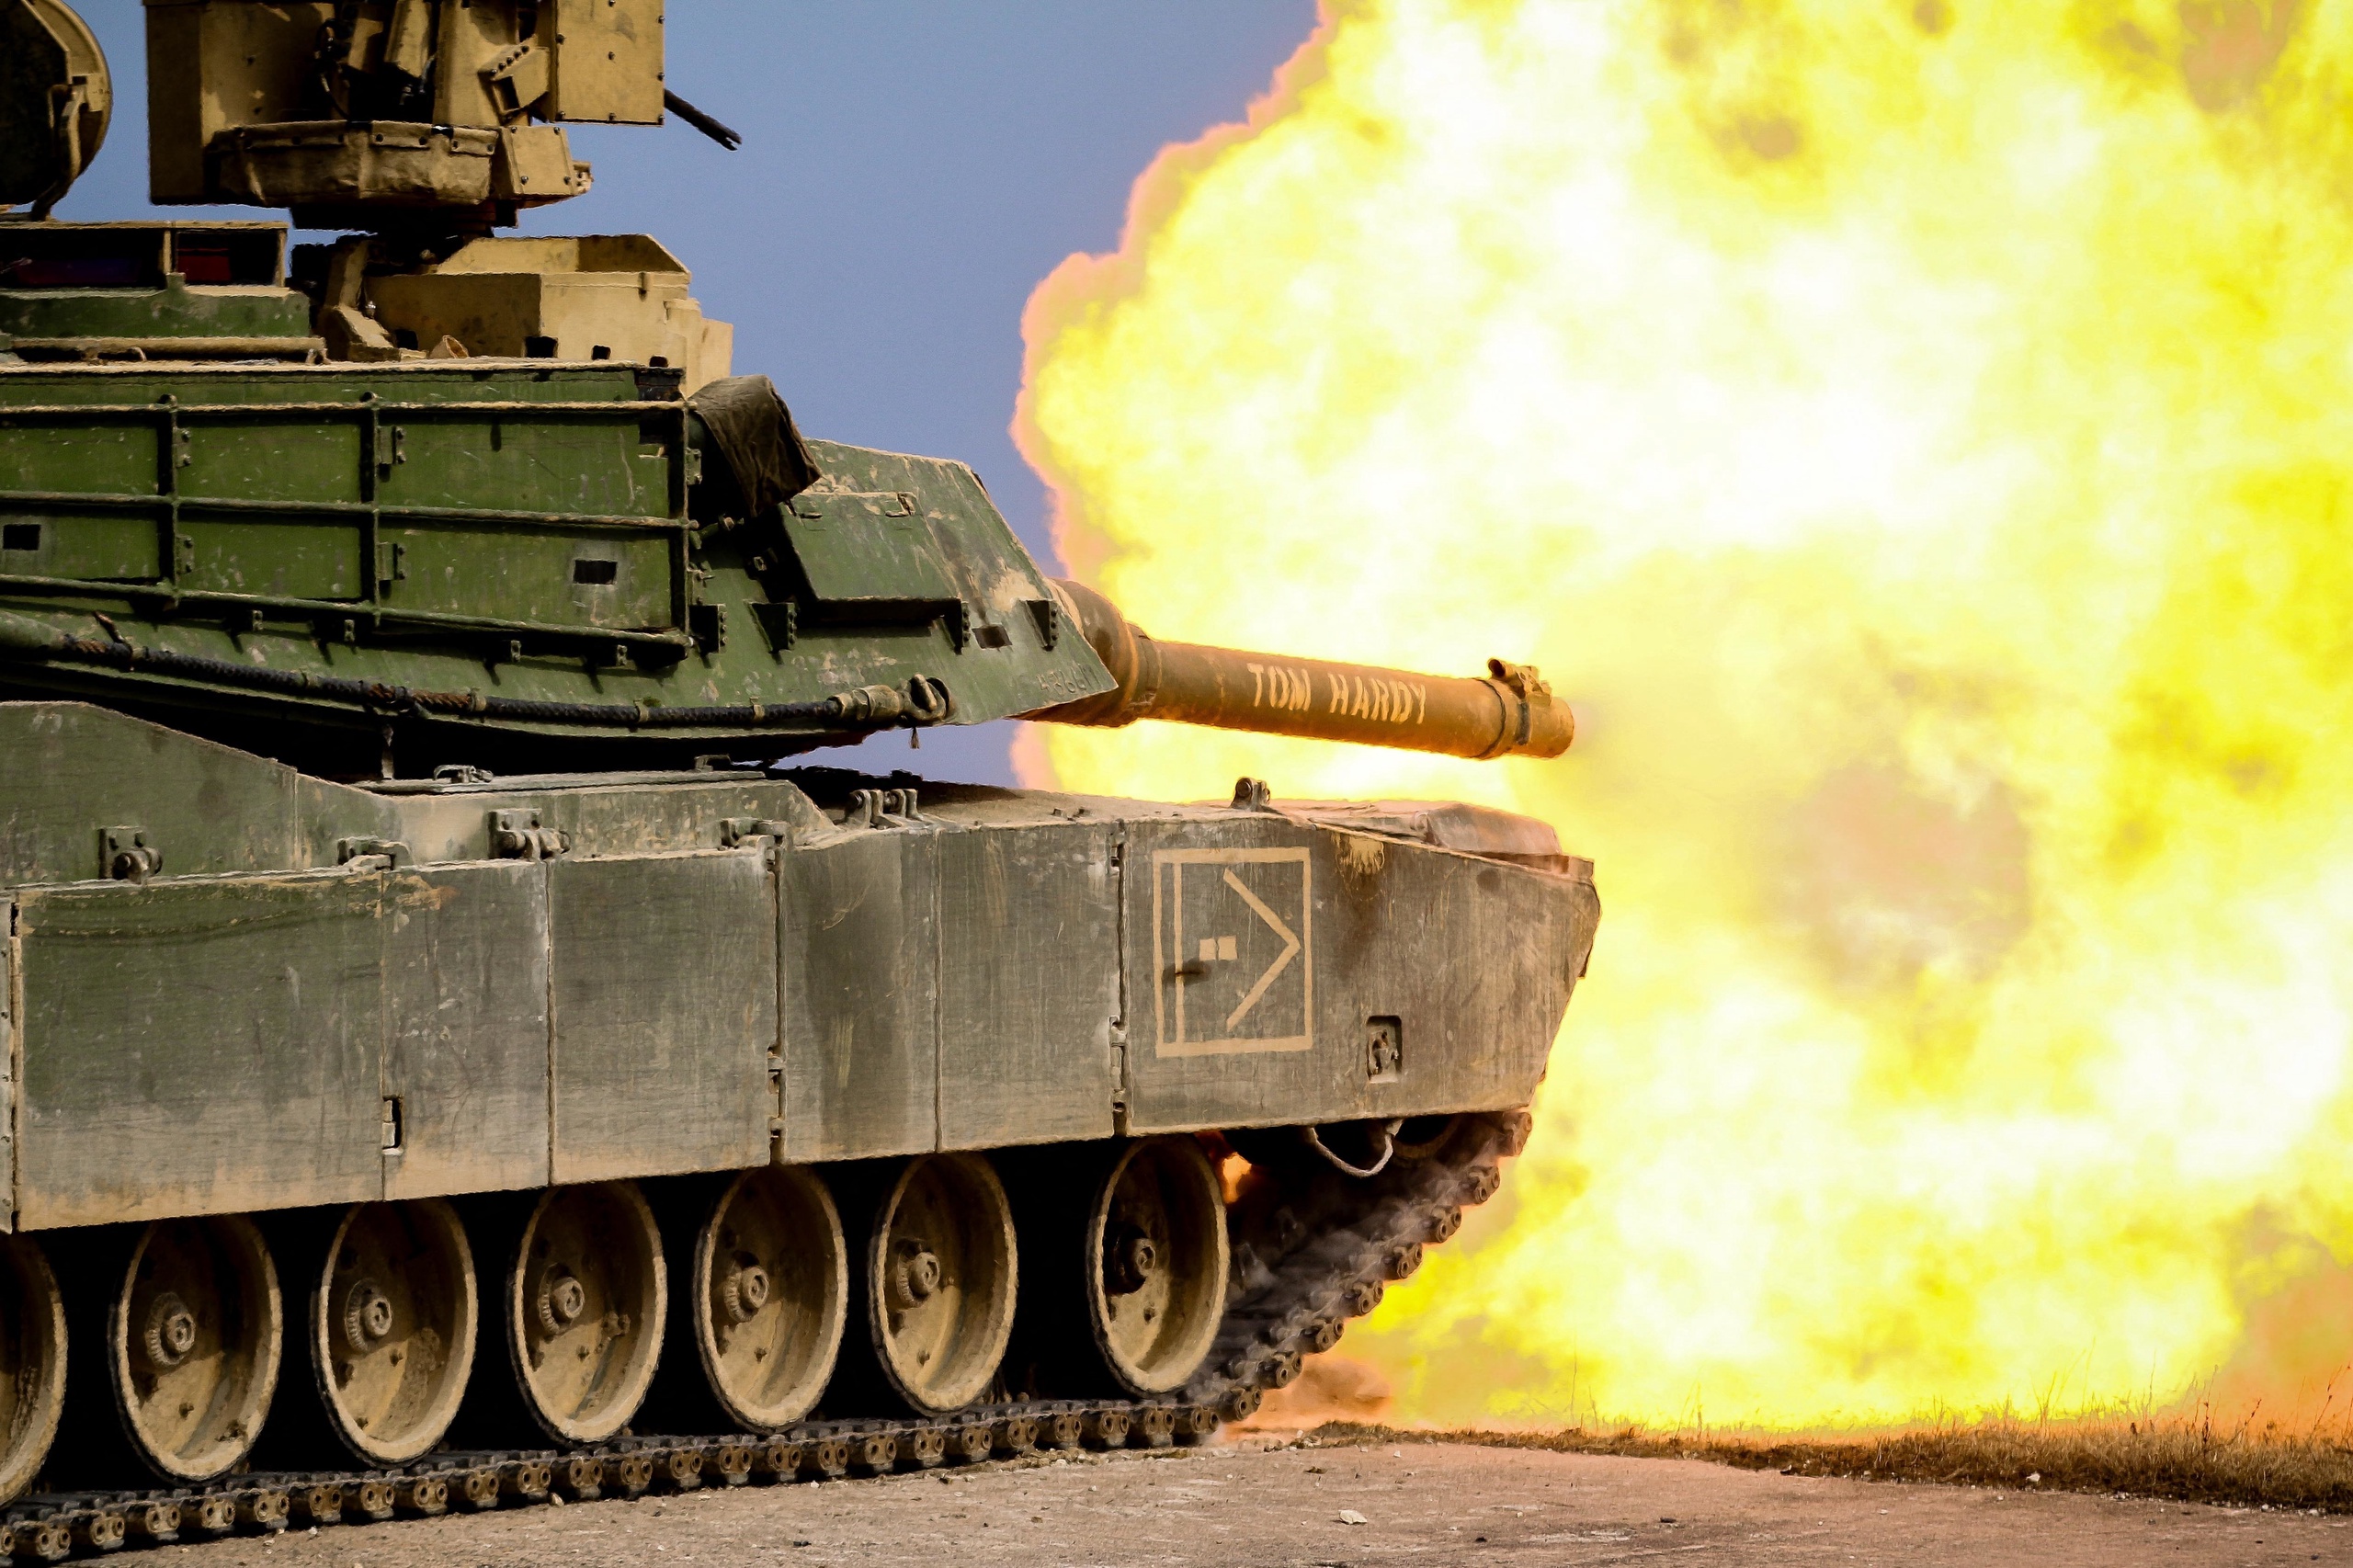 Hoewel de Duitse bondskanselier Scholz eiste dat de Amerikanen hun M1 Abrams-tanks zouden leveren voordat hij zijn Leopard 2-tanks beschikbaar stelde, heeft buitenlandcommentator Bernard Hammelburg zijn twijfels over het zware Amerikaanse apparaat.